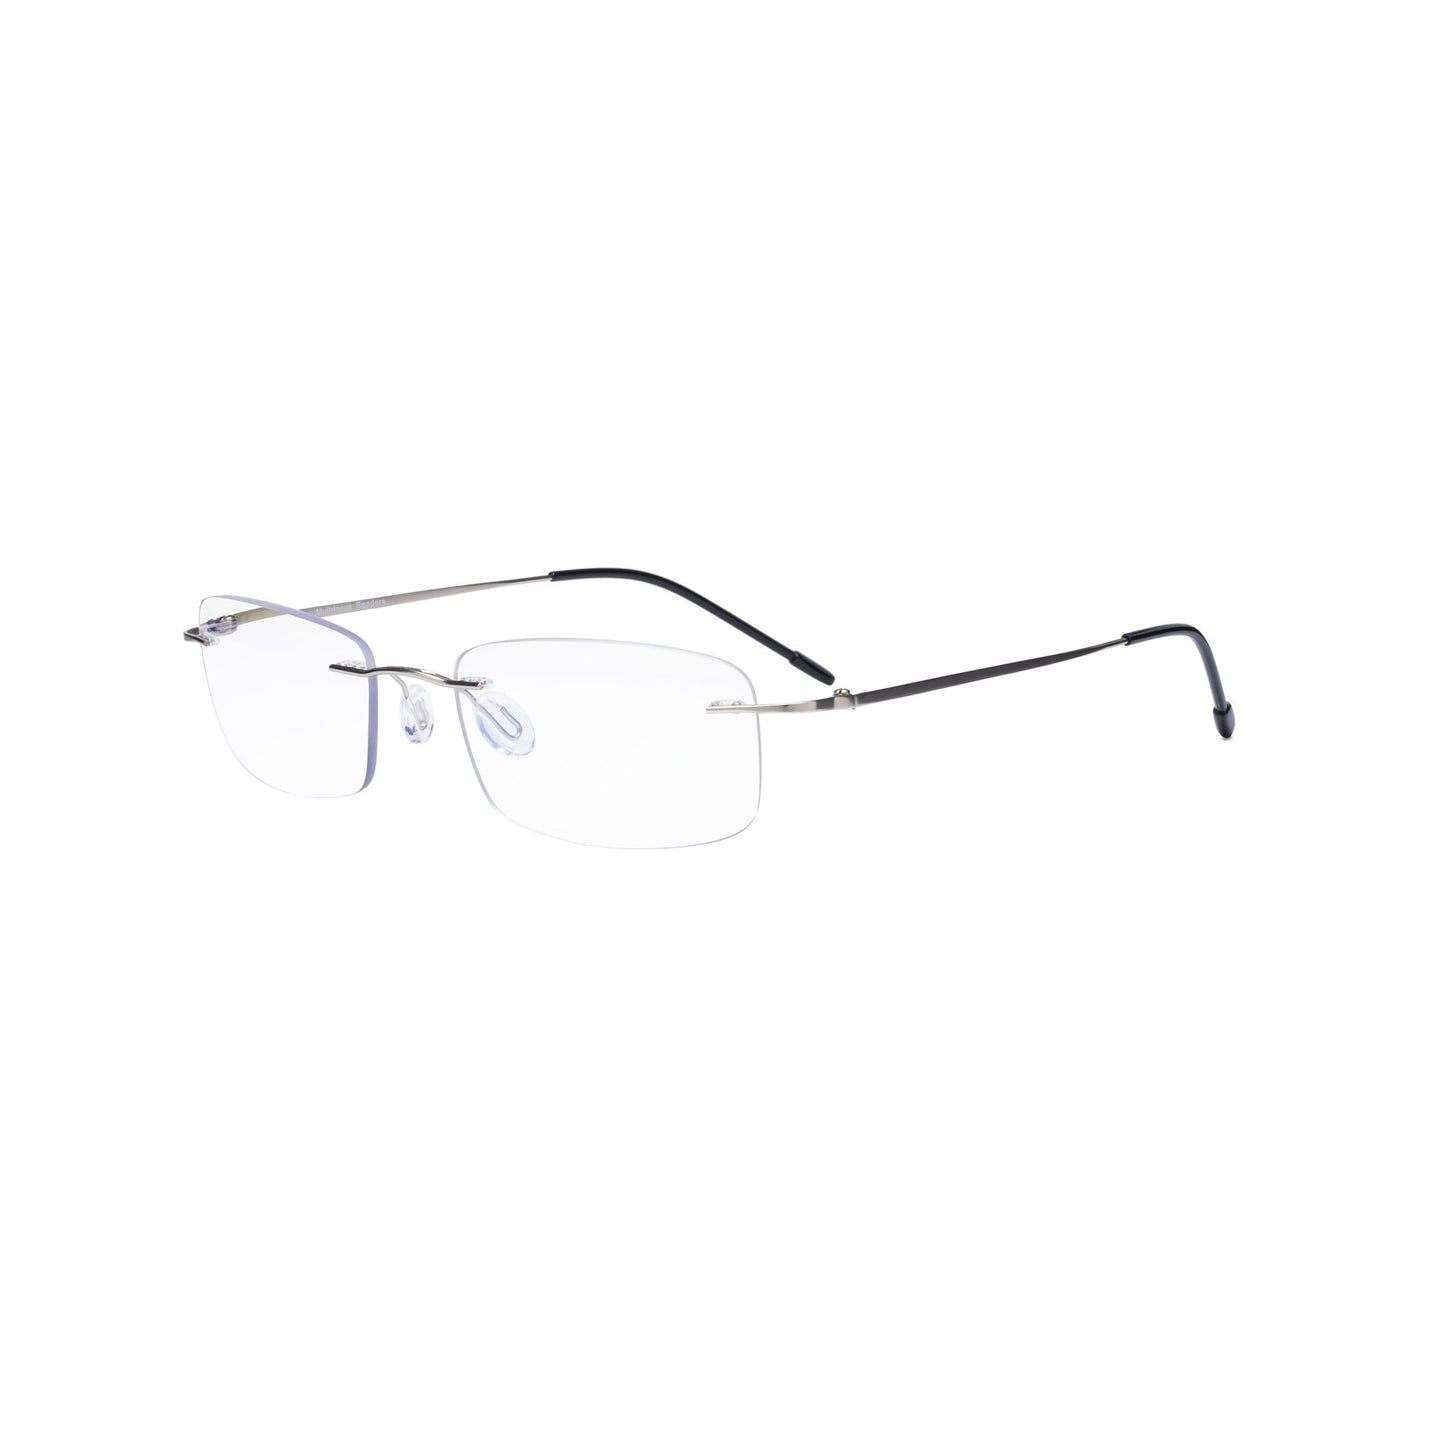 Frameless Progressive Reading Glasses Silver MWK8